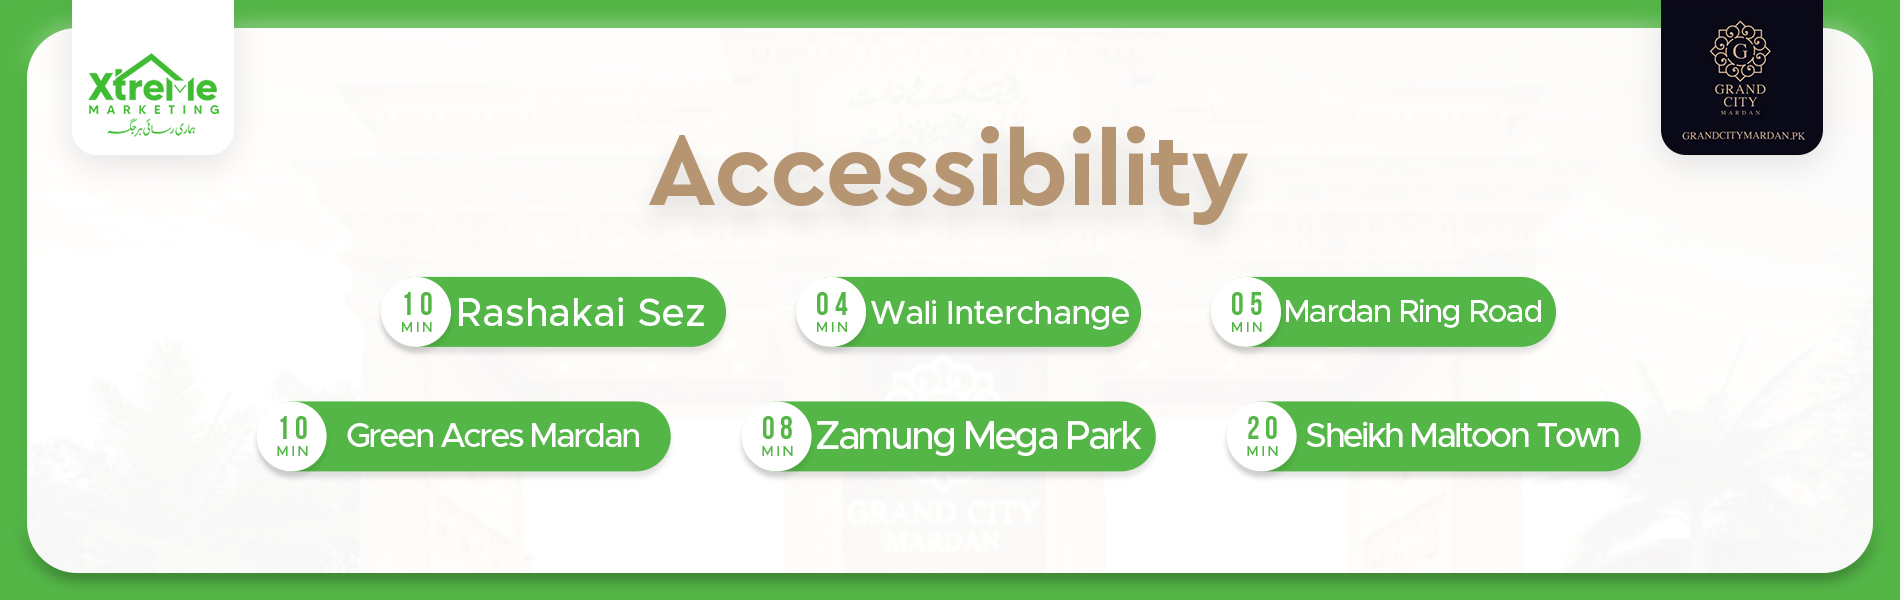 Grand City Mardan accessibility